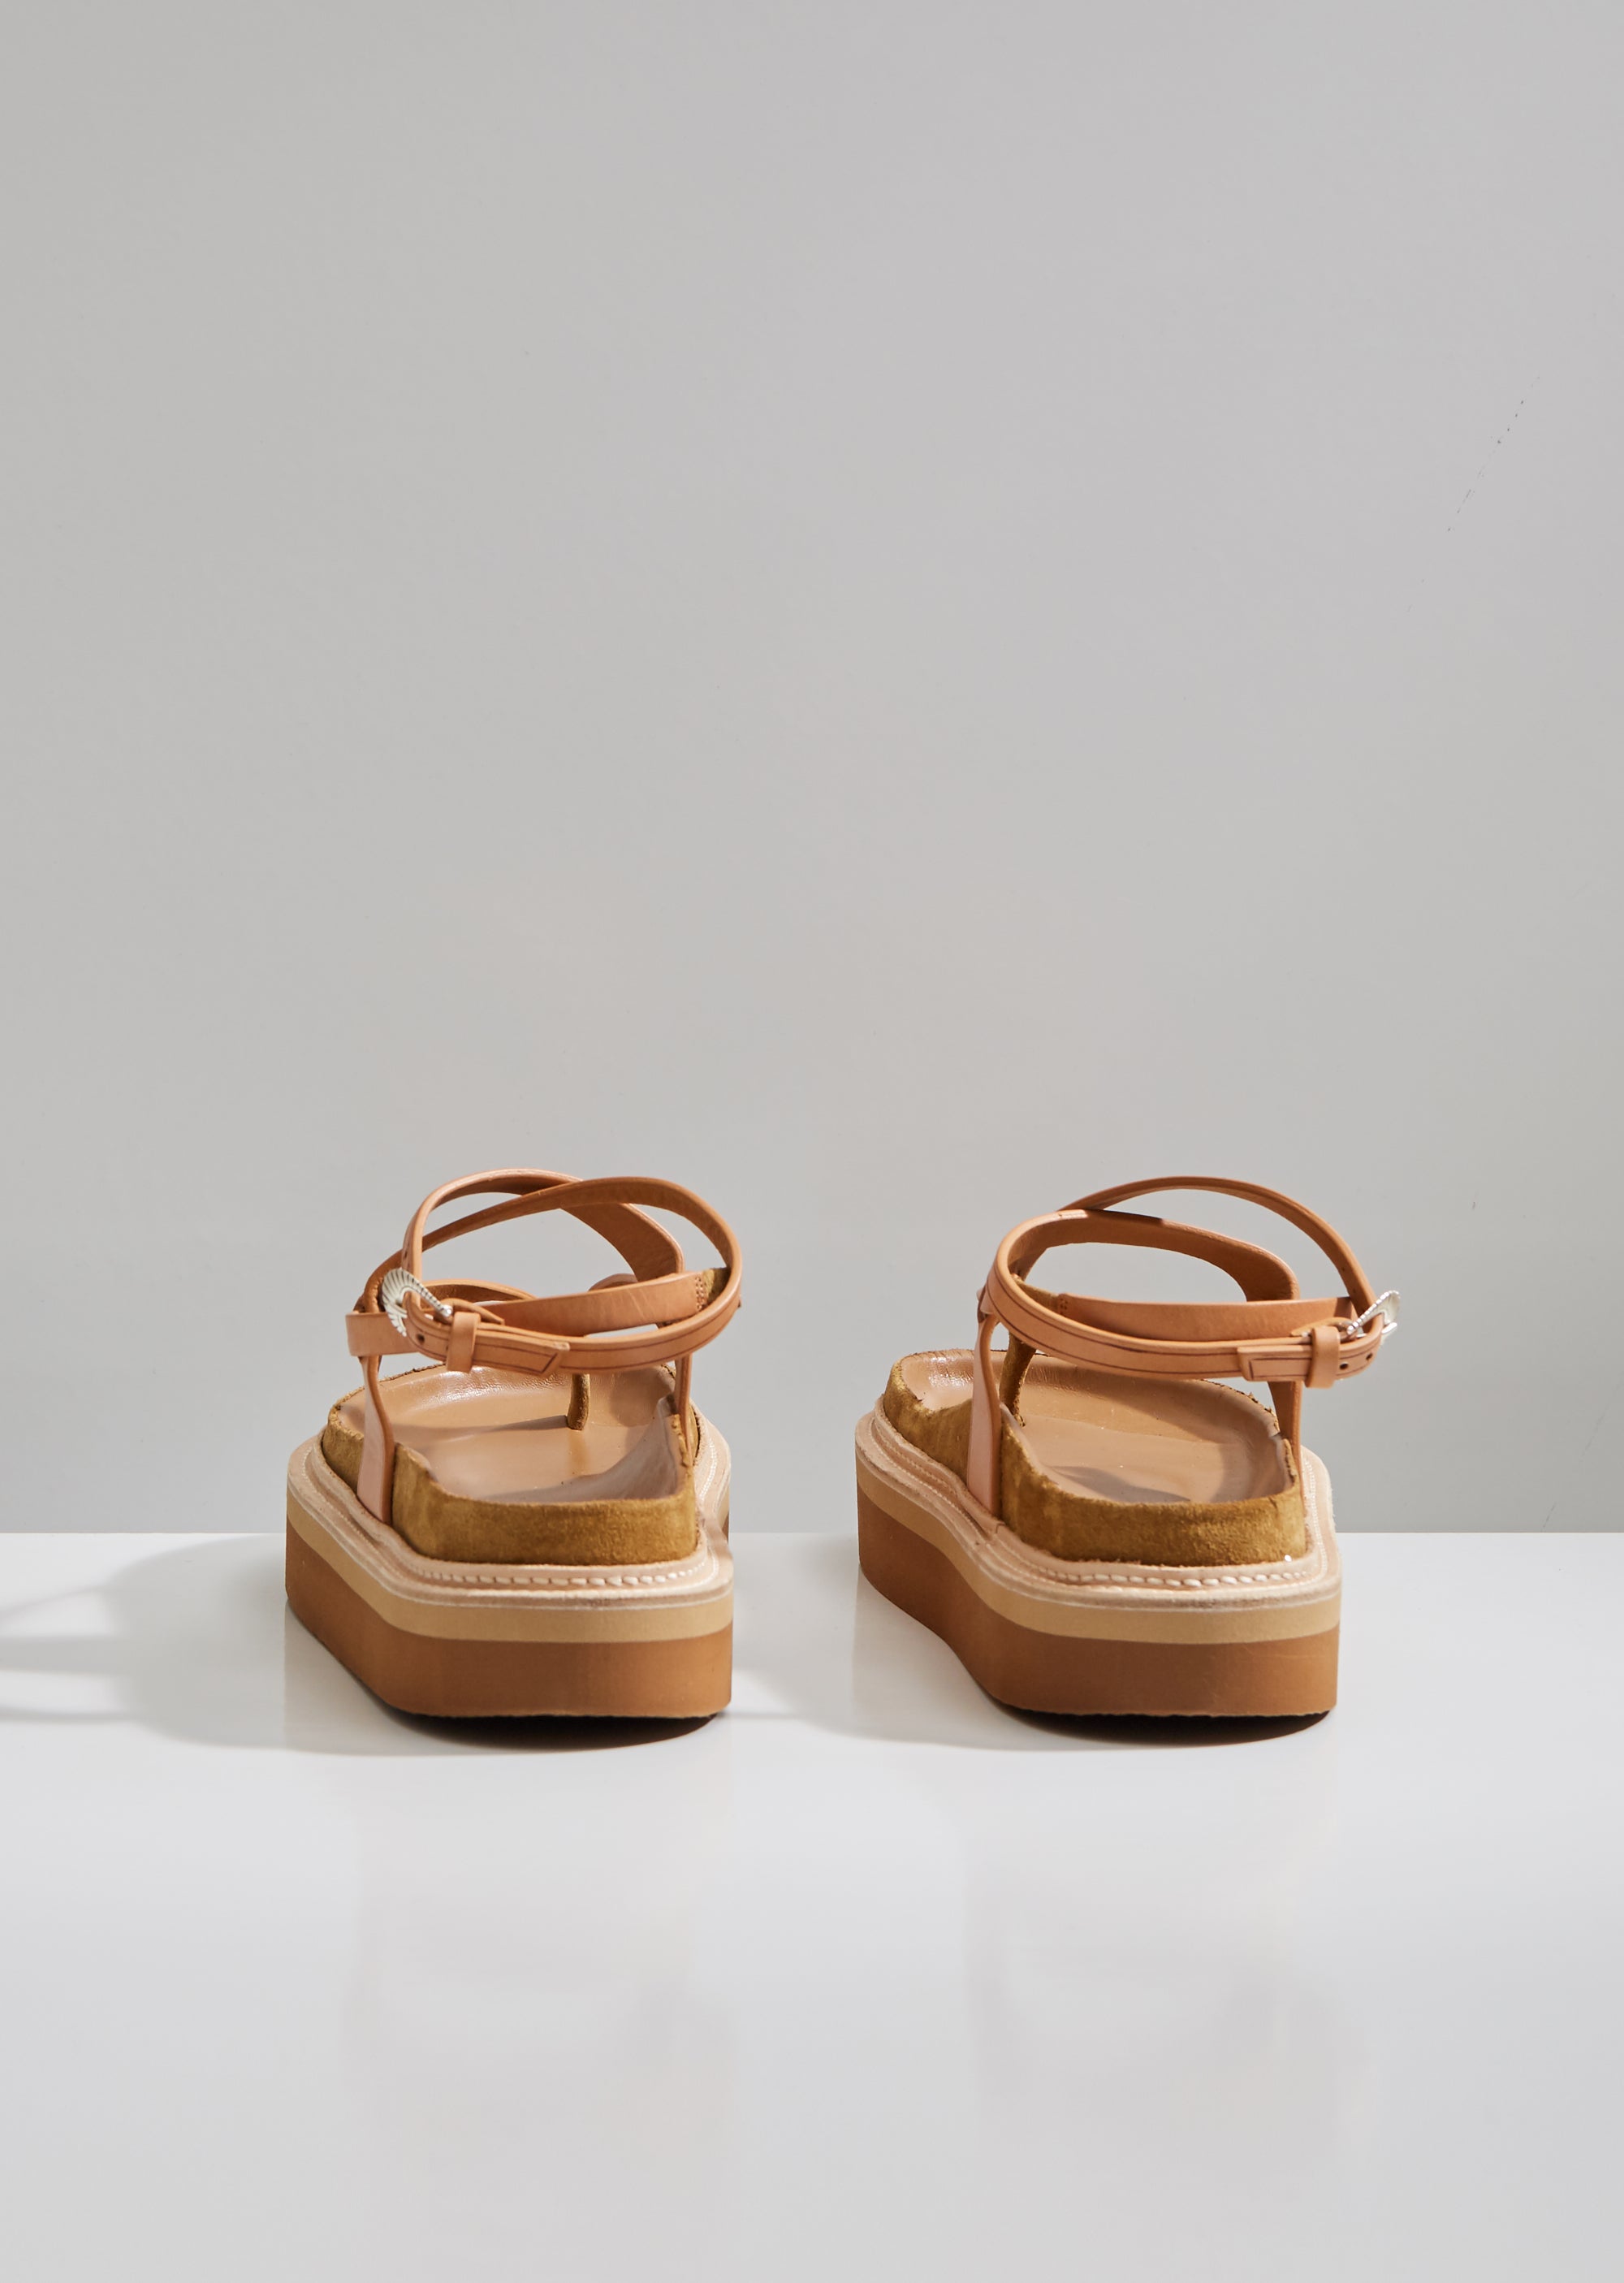 isabel marant esely platform sandals